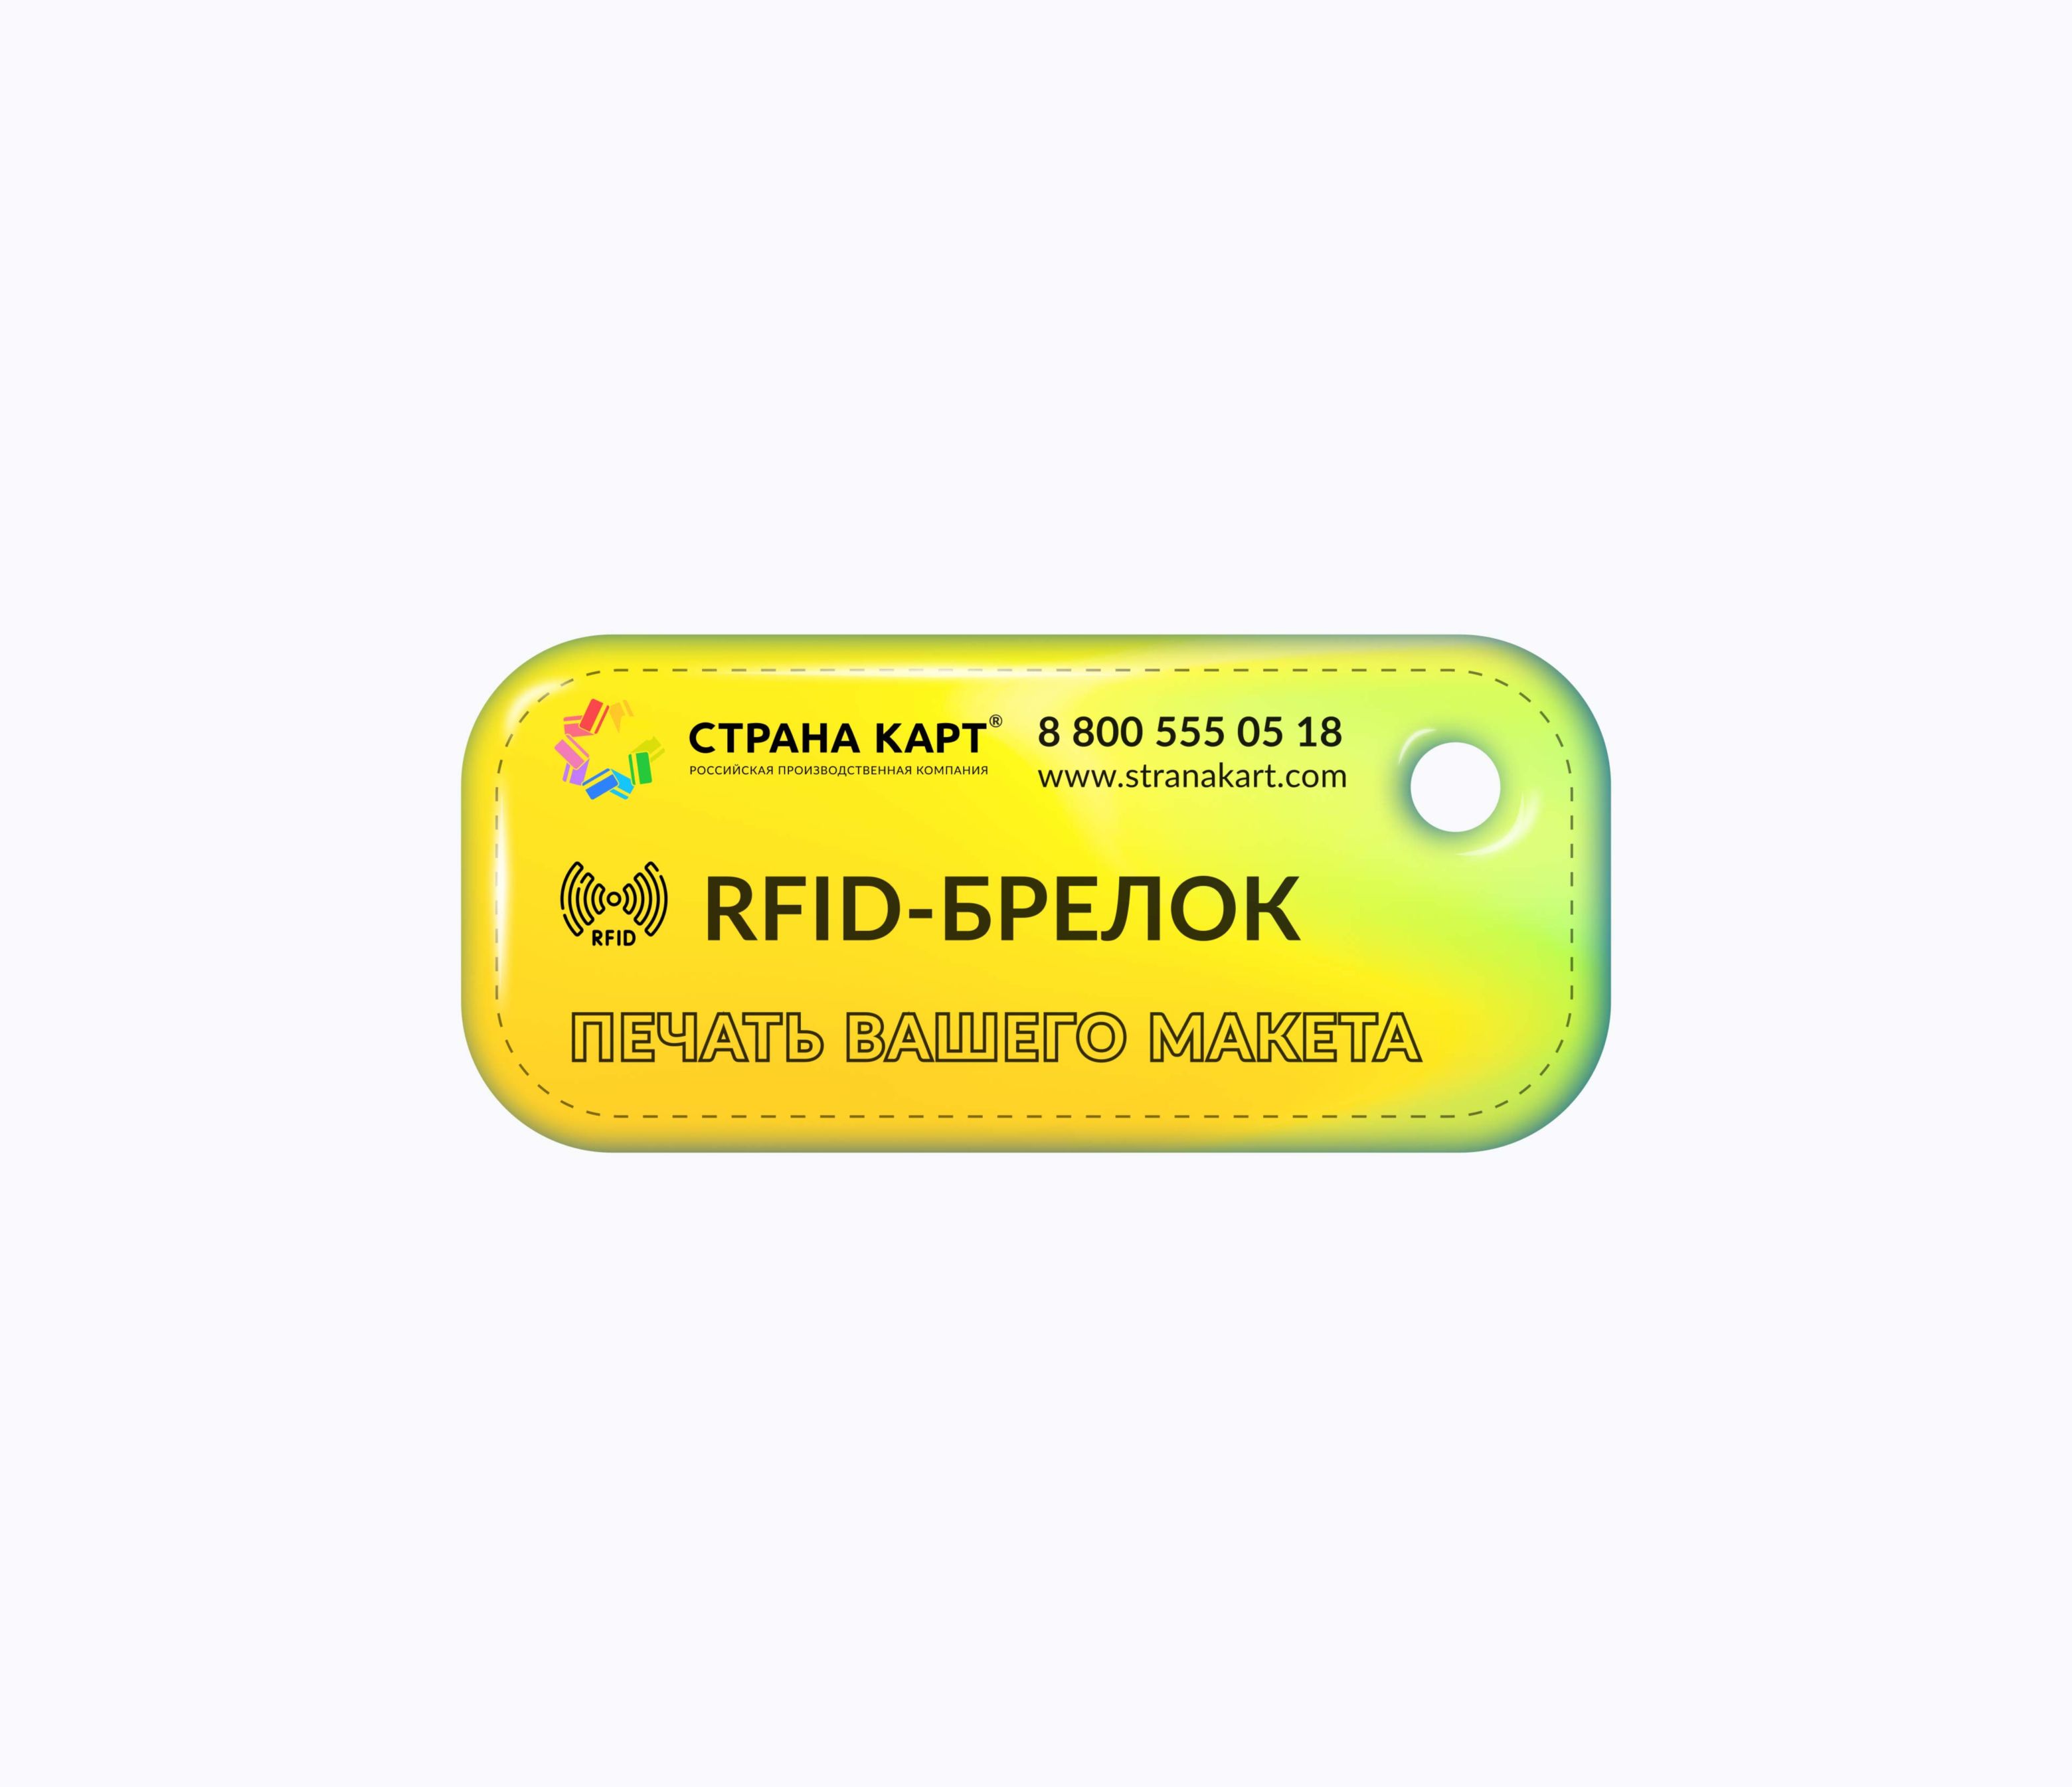 Прямоугольные Мини RFID-брелоки NEOKEY® с чипом для батутных парков RFID-брелоки NEOKEY® с чипом для батутных парков